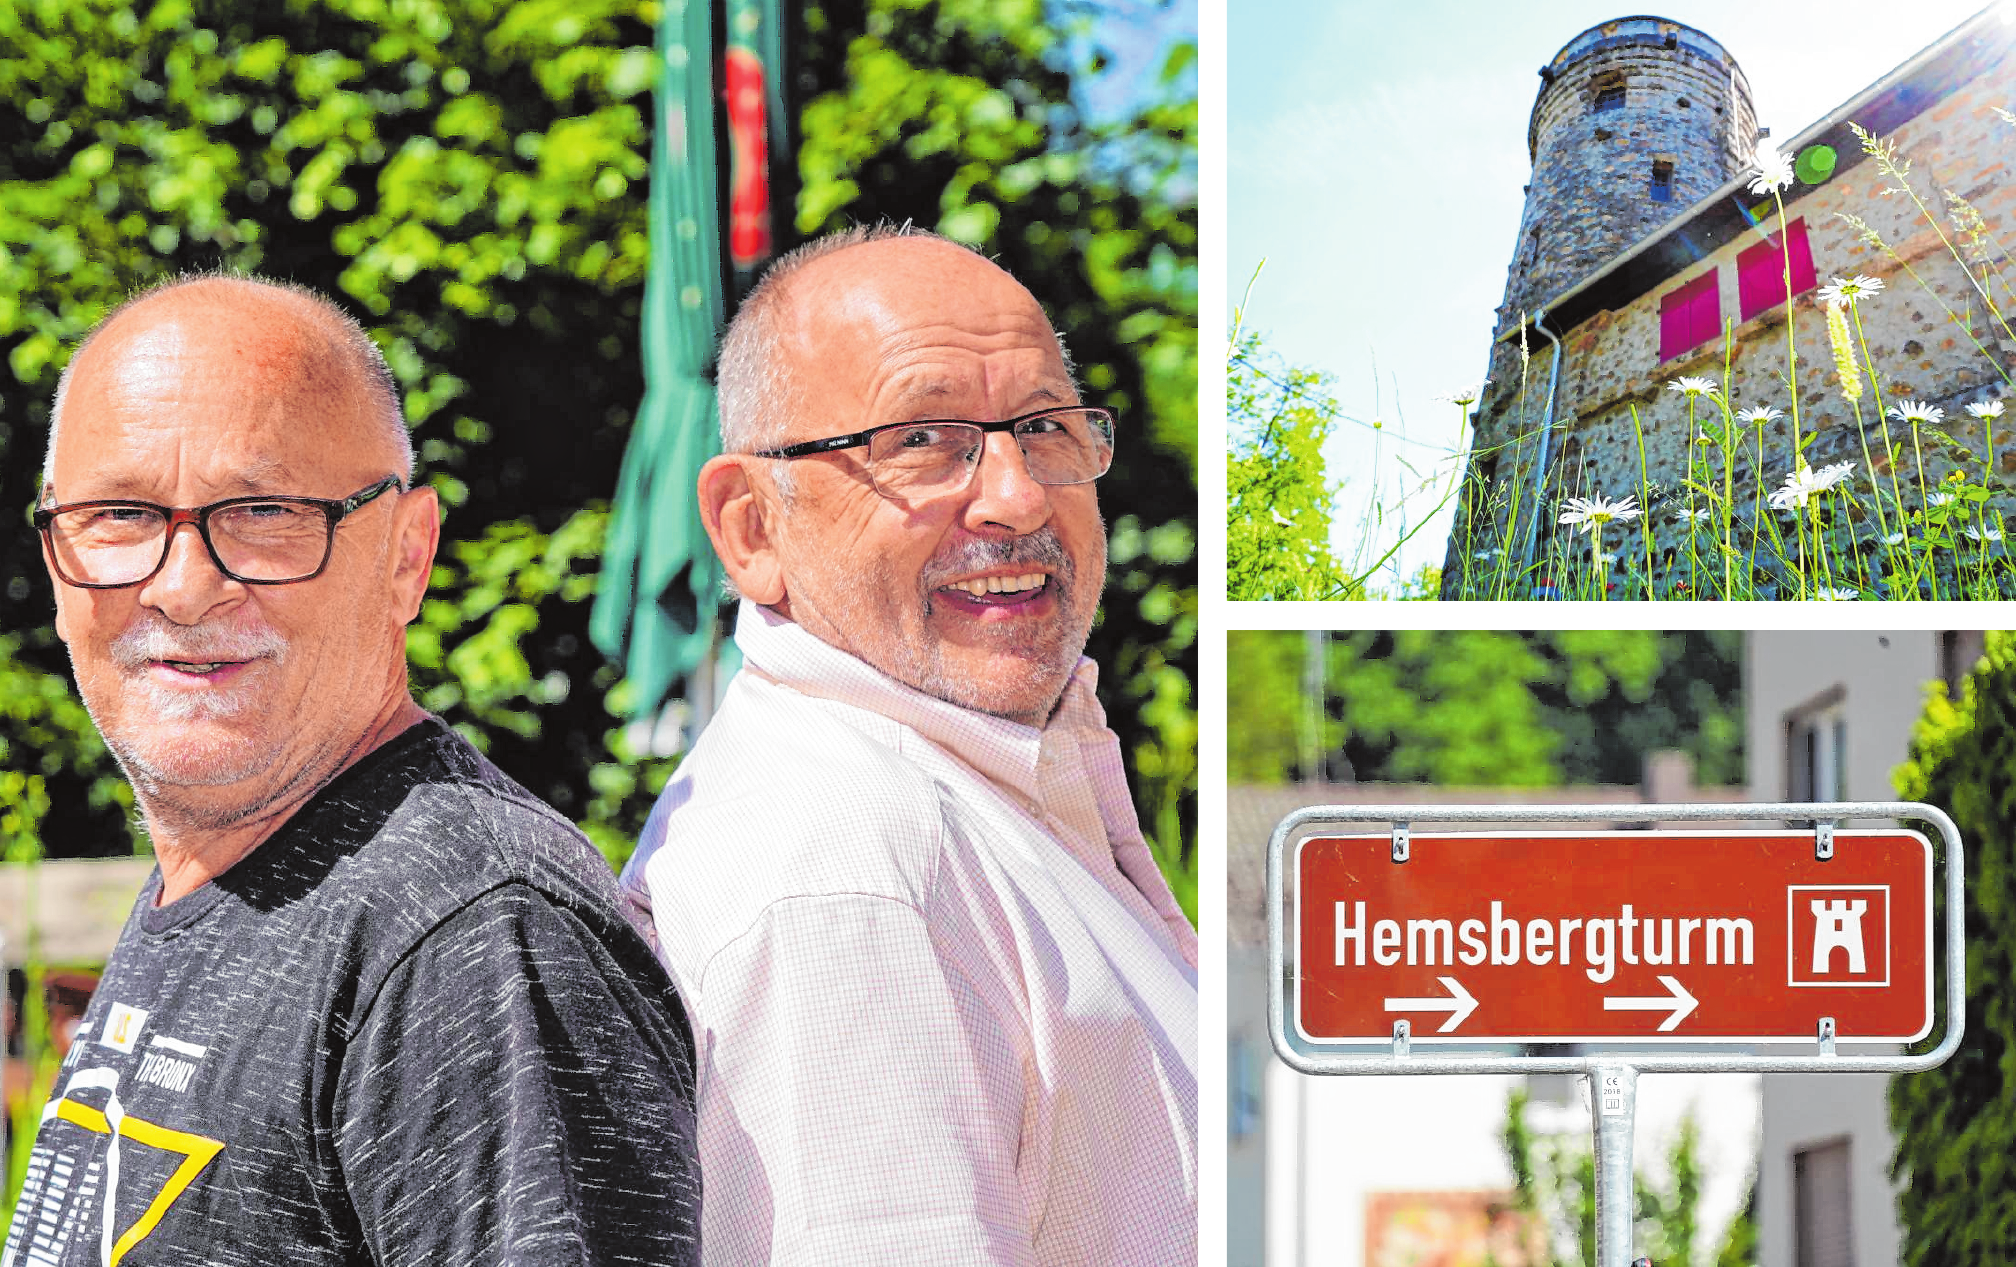 Dieter Krastel (links) bewirtet auf dem Hemsberg die Gäste. Hans-Peter Ott ist Vorsitzender des Hemsbergturm-Vereins, der seit 2017 die Verantwortung für den Turm vom Bensheimer Odenwaldklub übernommen hat. Bilder: Thomas Zelinger